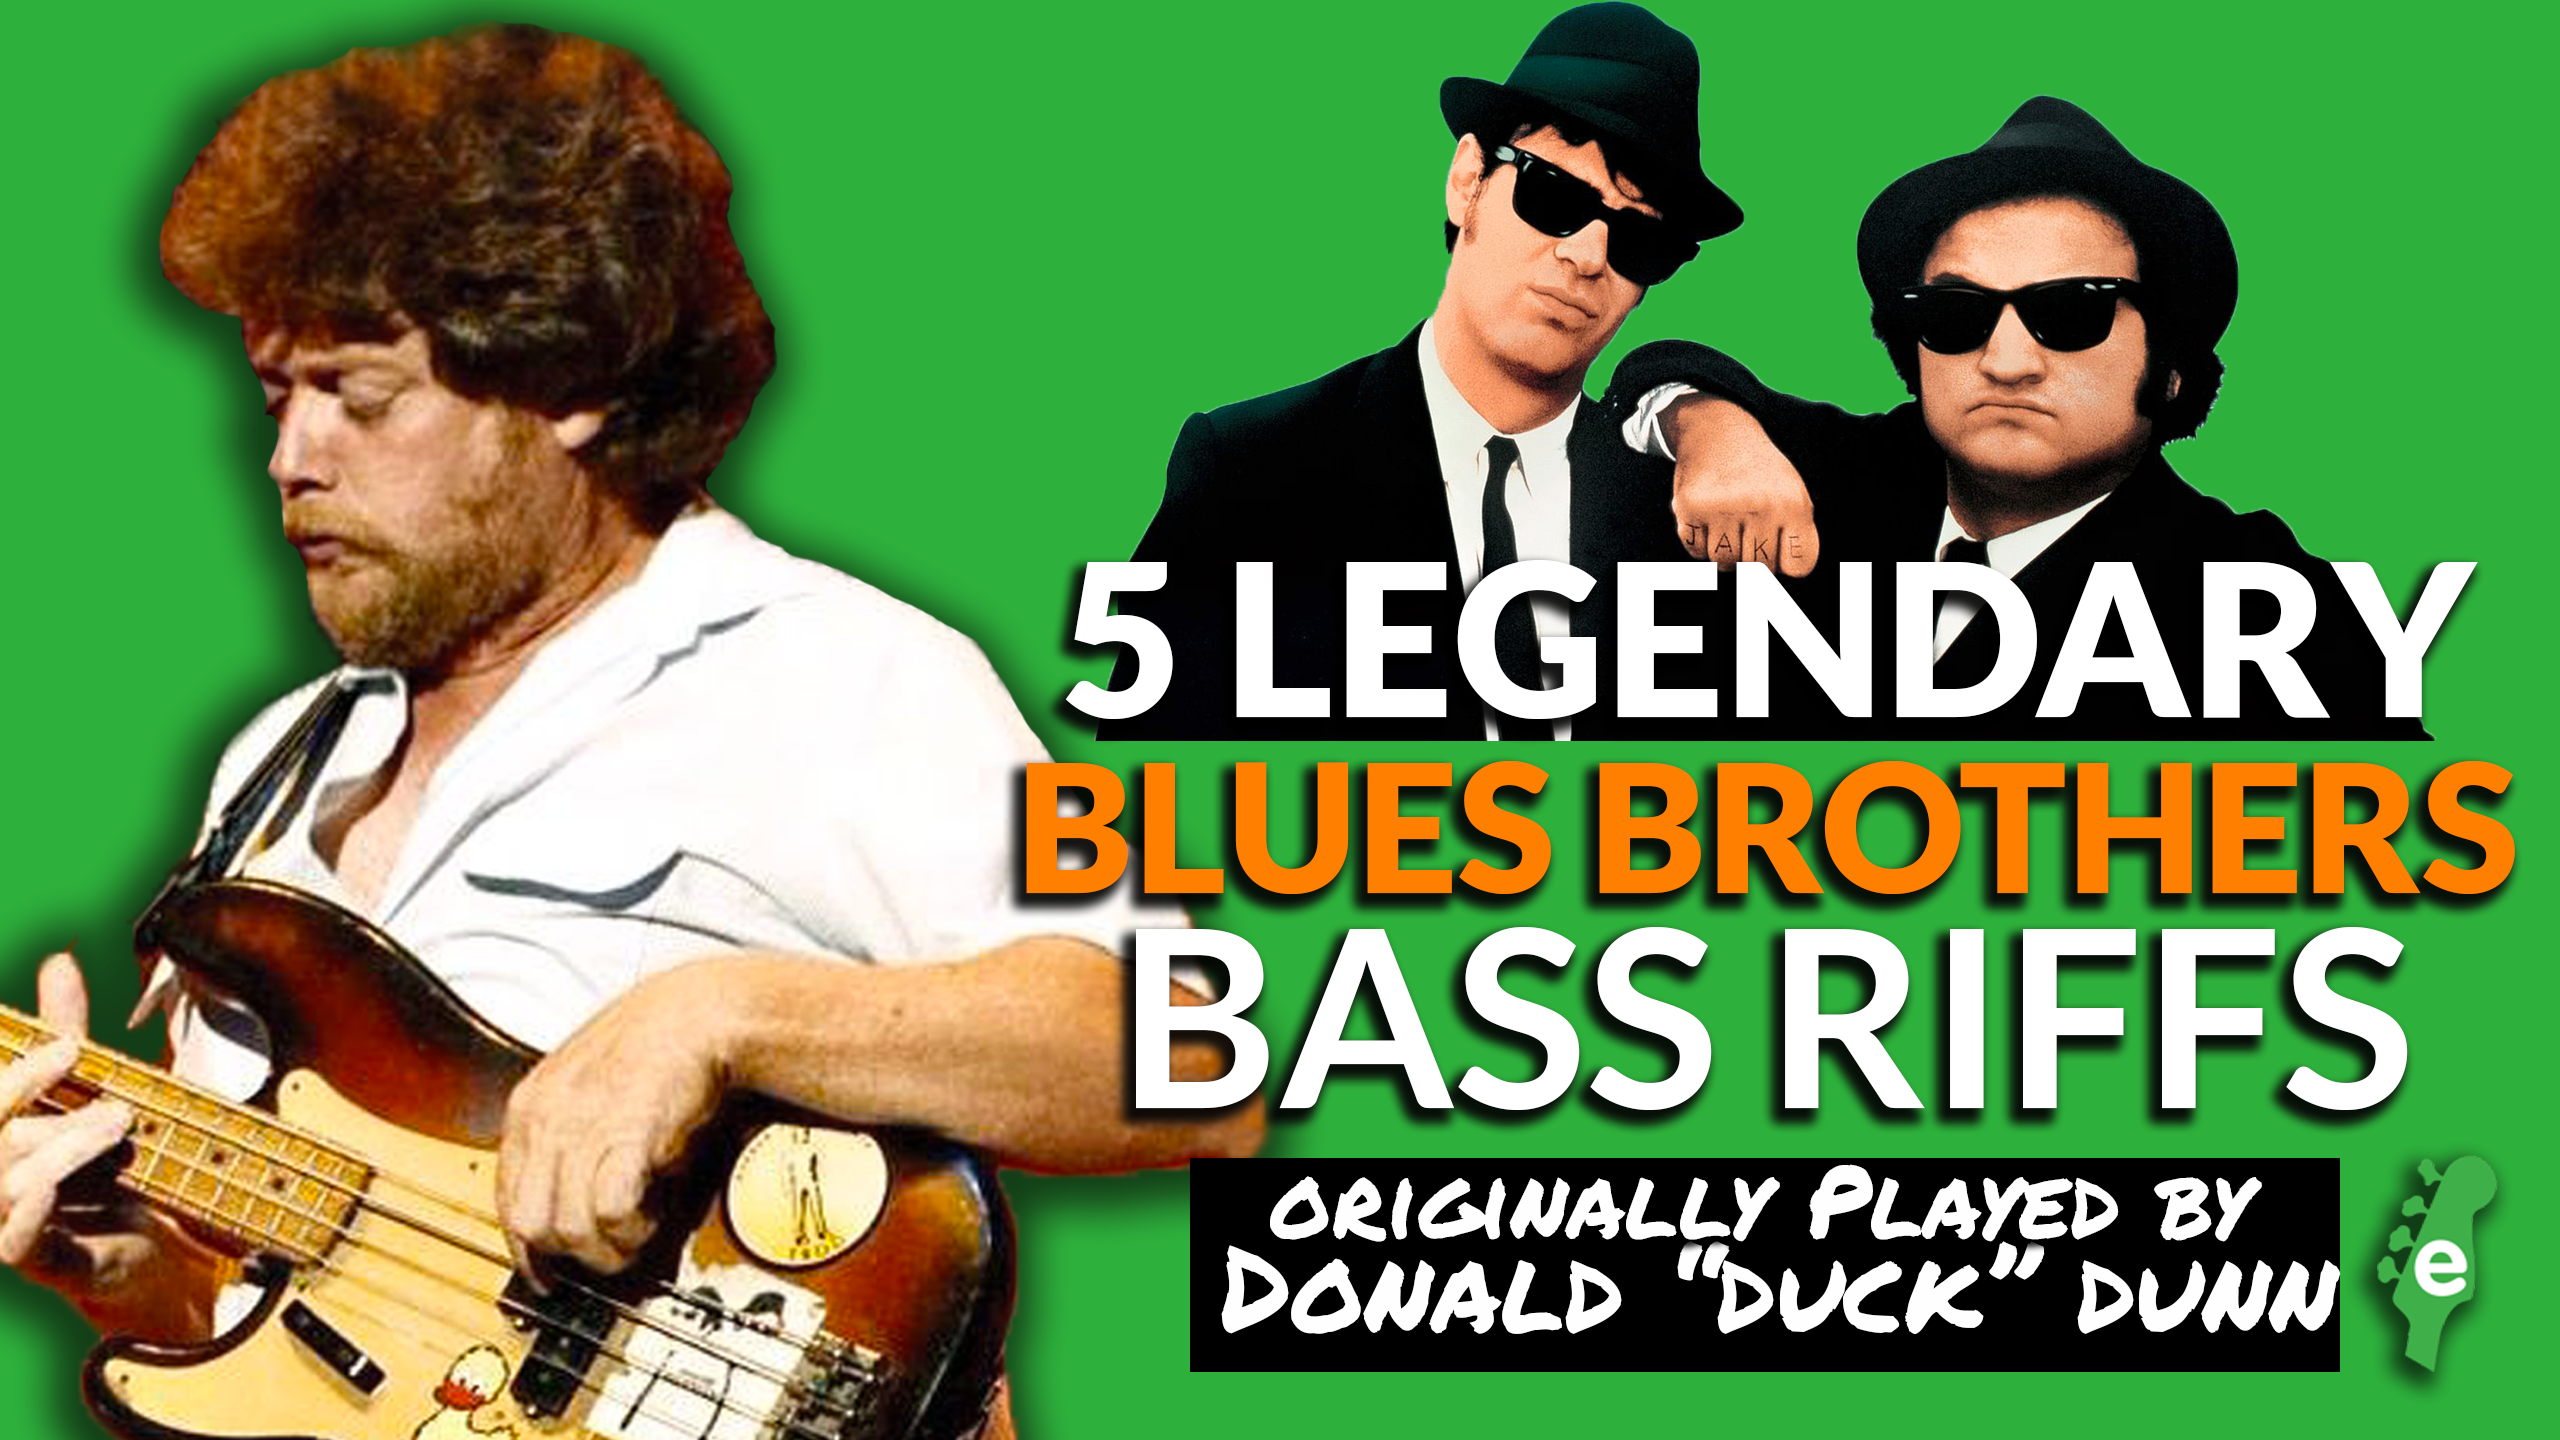 Brother bass. Bass brothers. Donald “Duck” Dunn братья блюз. Donald "Duck" Dunn Bass 1969.